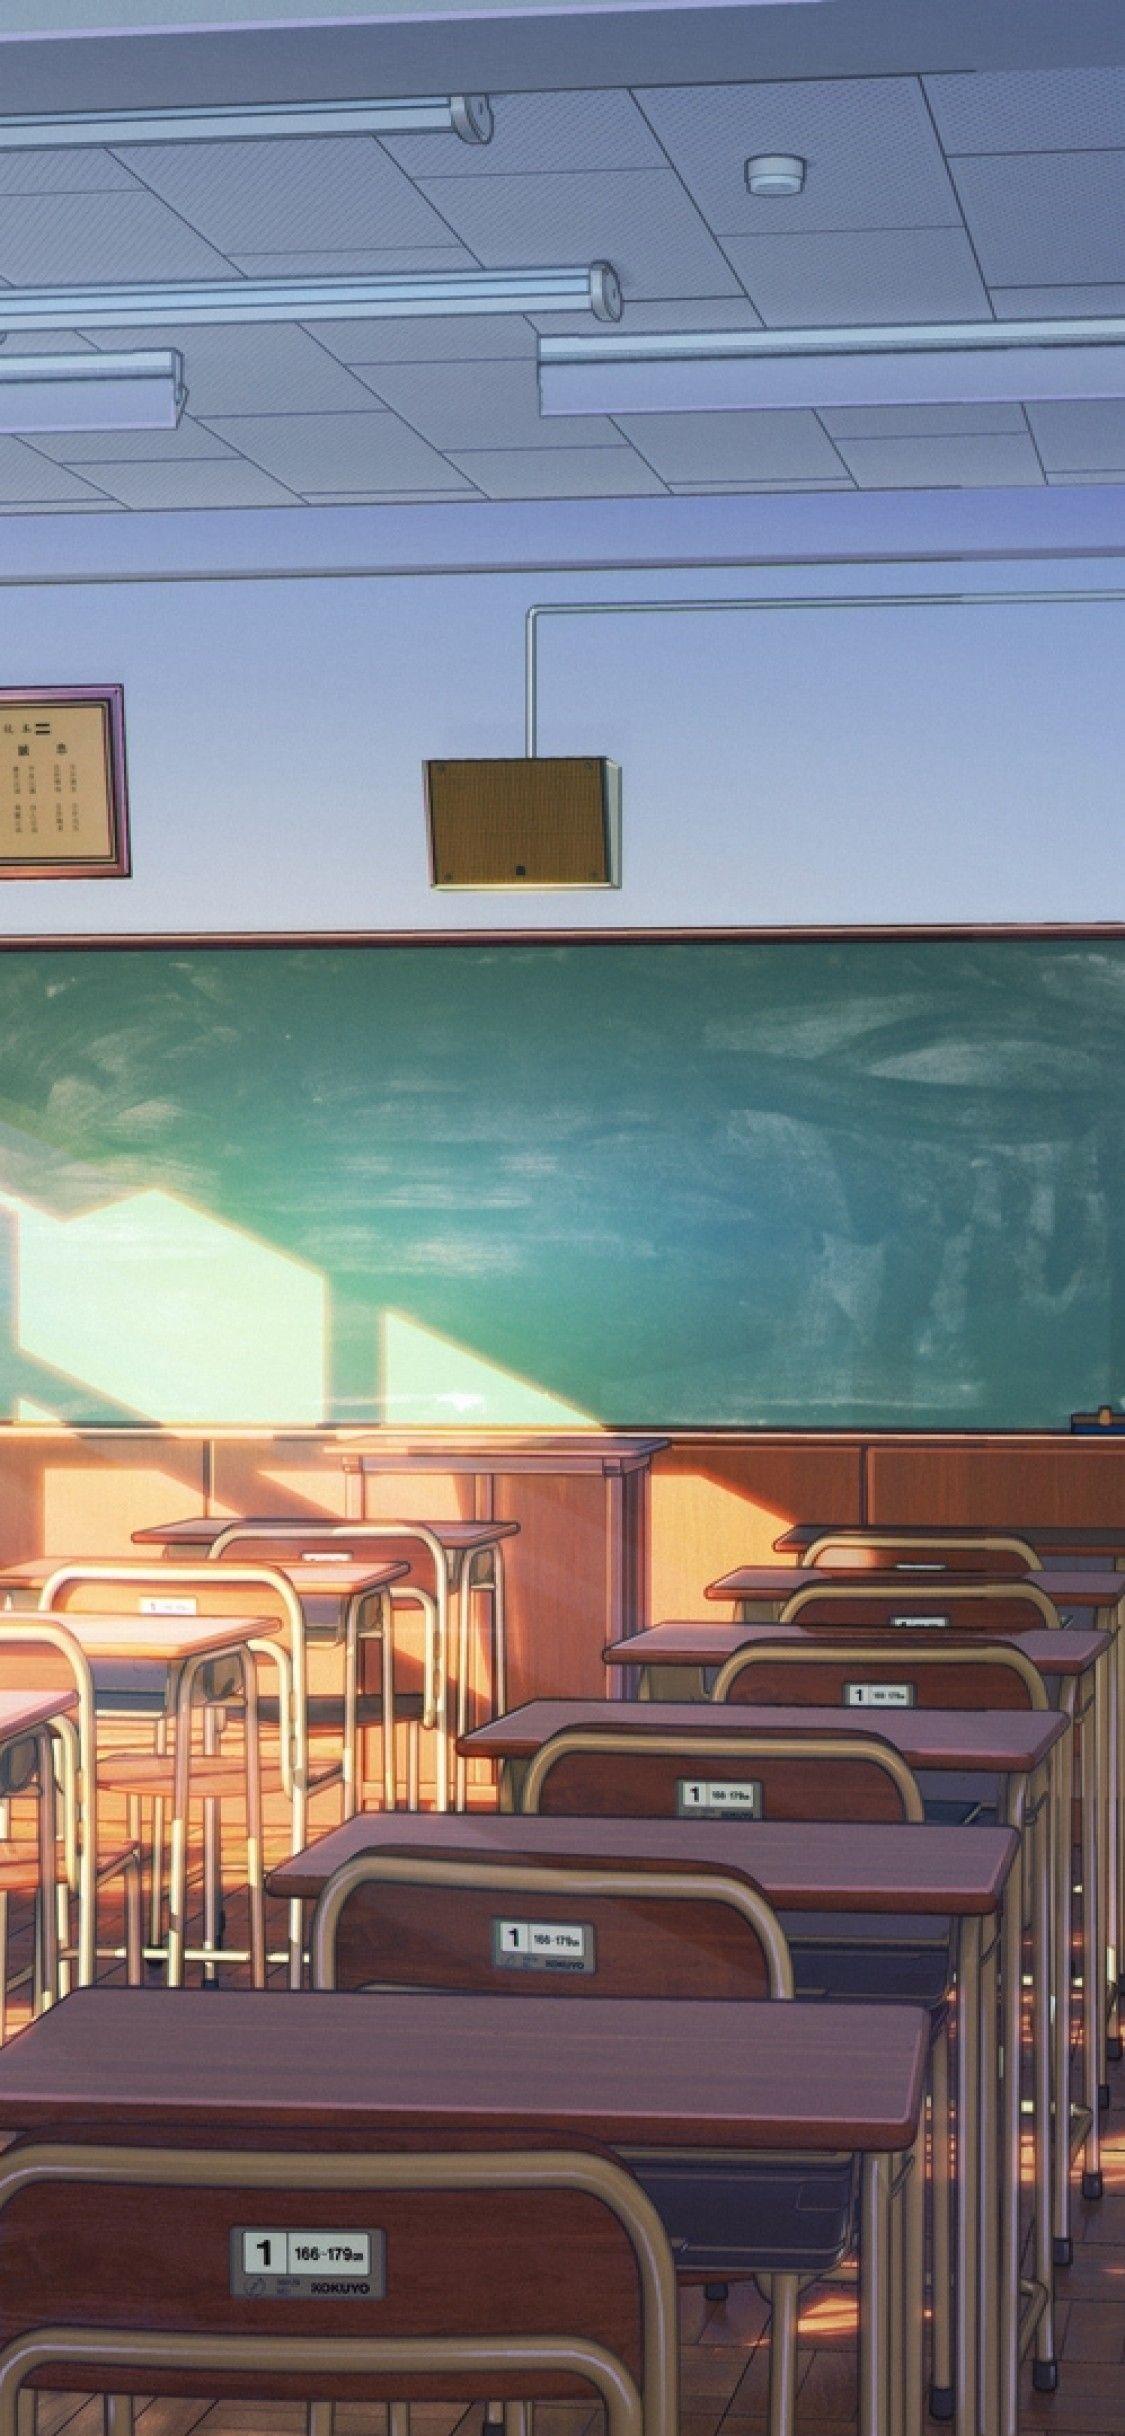 1125x2436 Tải xuống 1125x2436 Anime Scenic, Lớp học, Ánh nắng mặt trời, Hình nền tòa nhà cho iPhone X